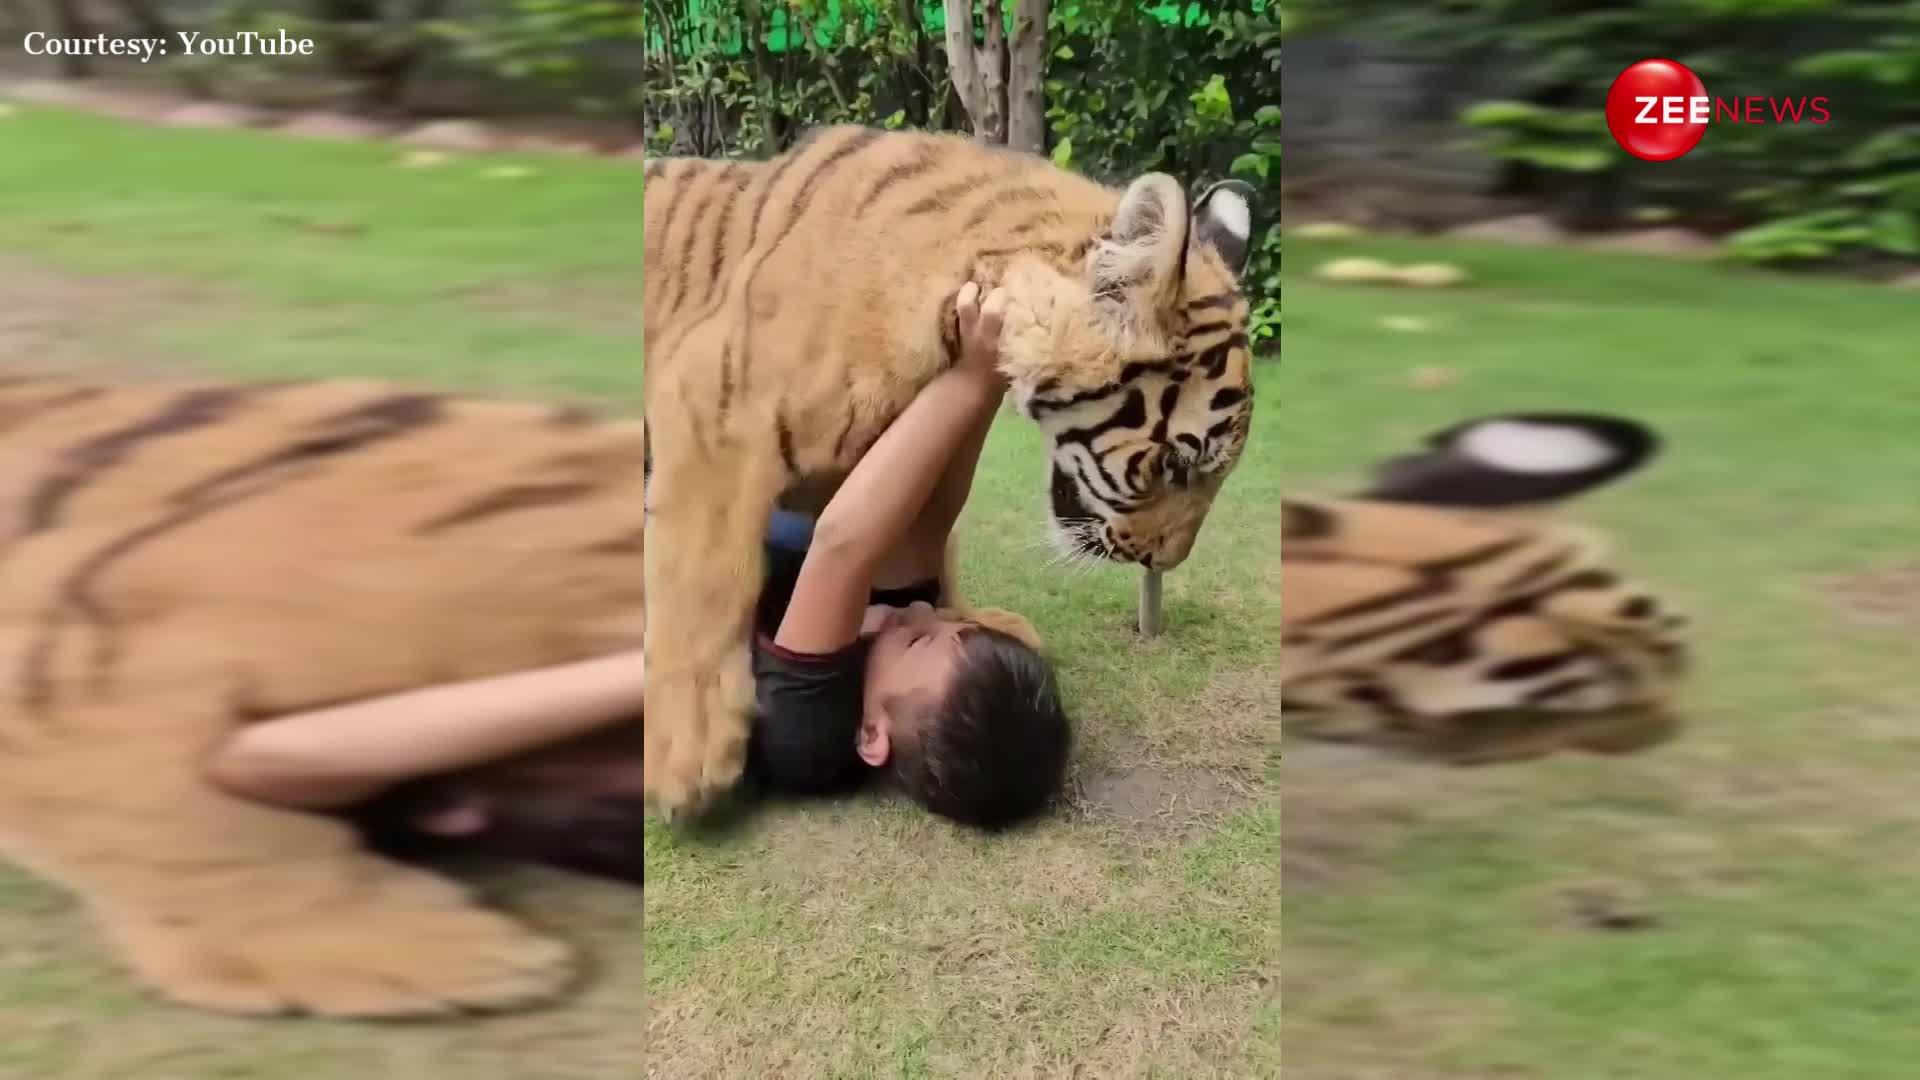 8 साल के बच्चे ने की बाघ से दोस्ती, मिलने पहुंचा तो जमीन पर लेटाकर चाटा; खतरनाक दृश्य देख हिल गए लोग